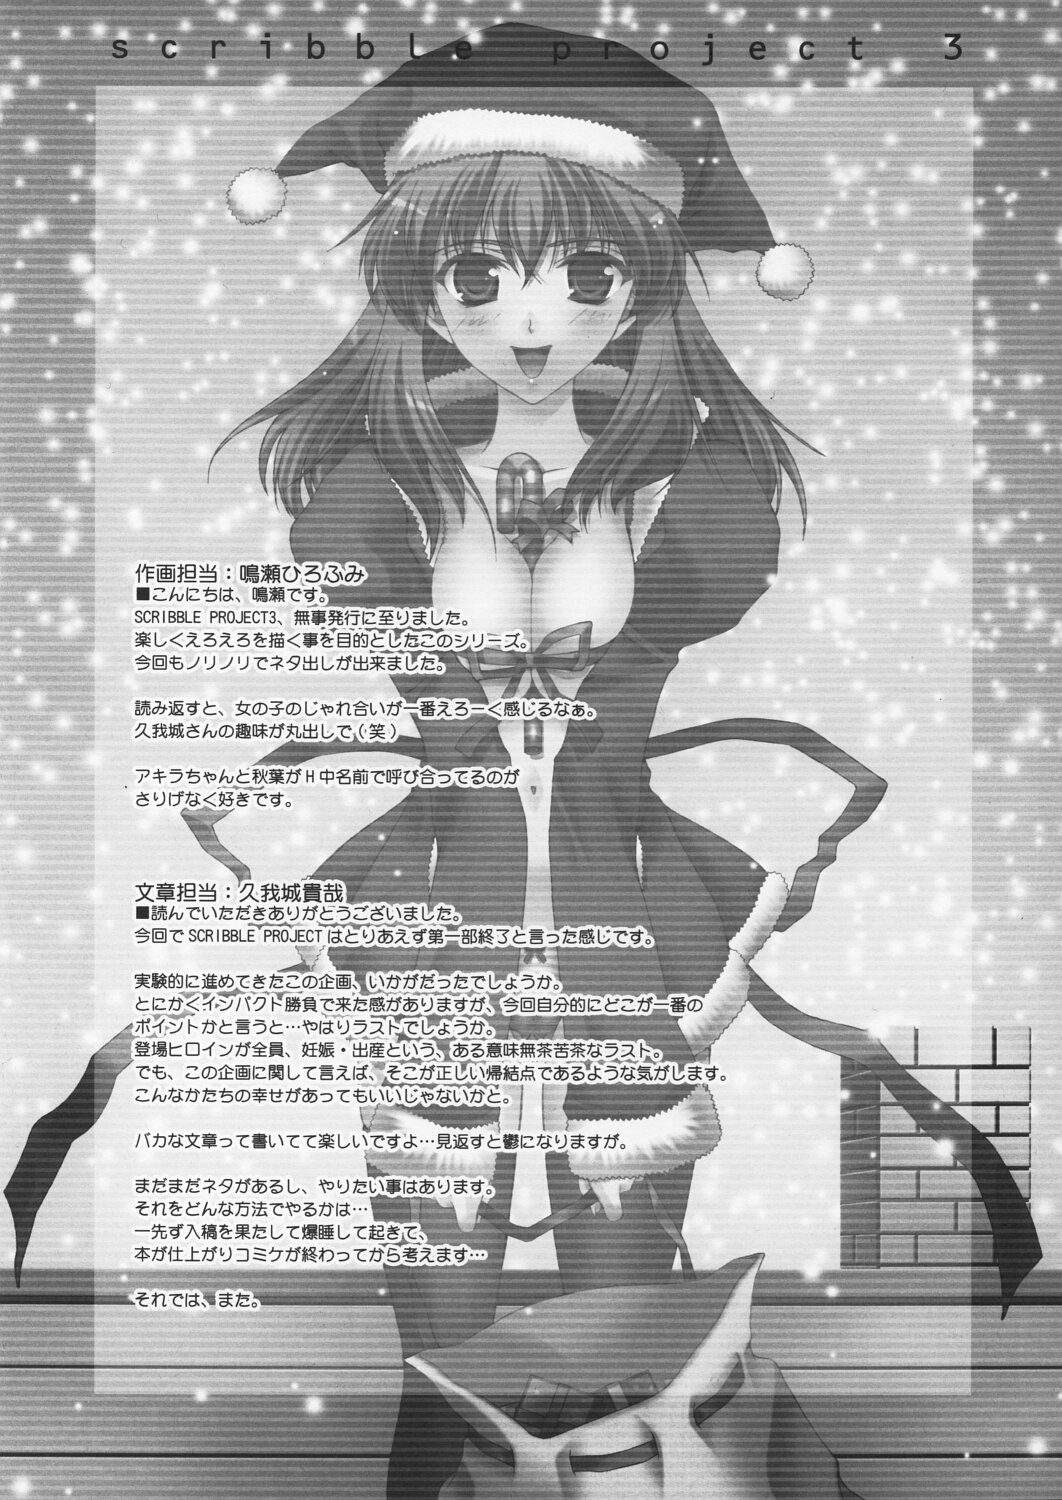 (C63) [恋愛漫画家 (鳴瀬ひろふみ)] Scribble Project 3 (月姫)